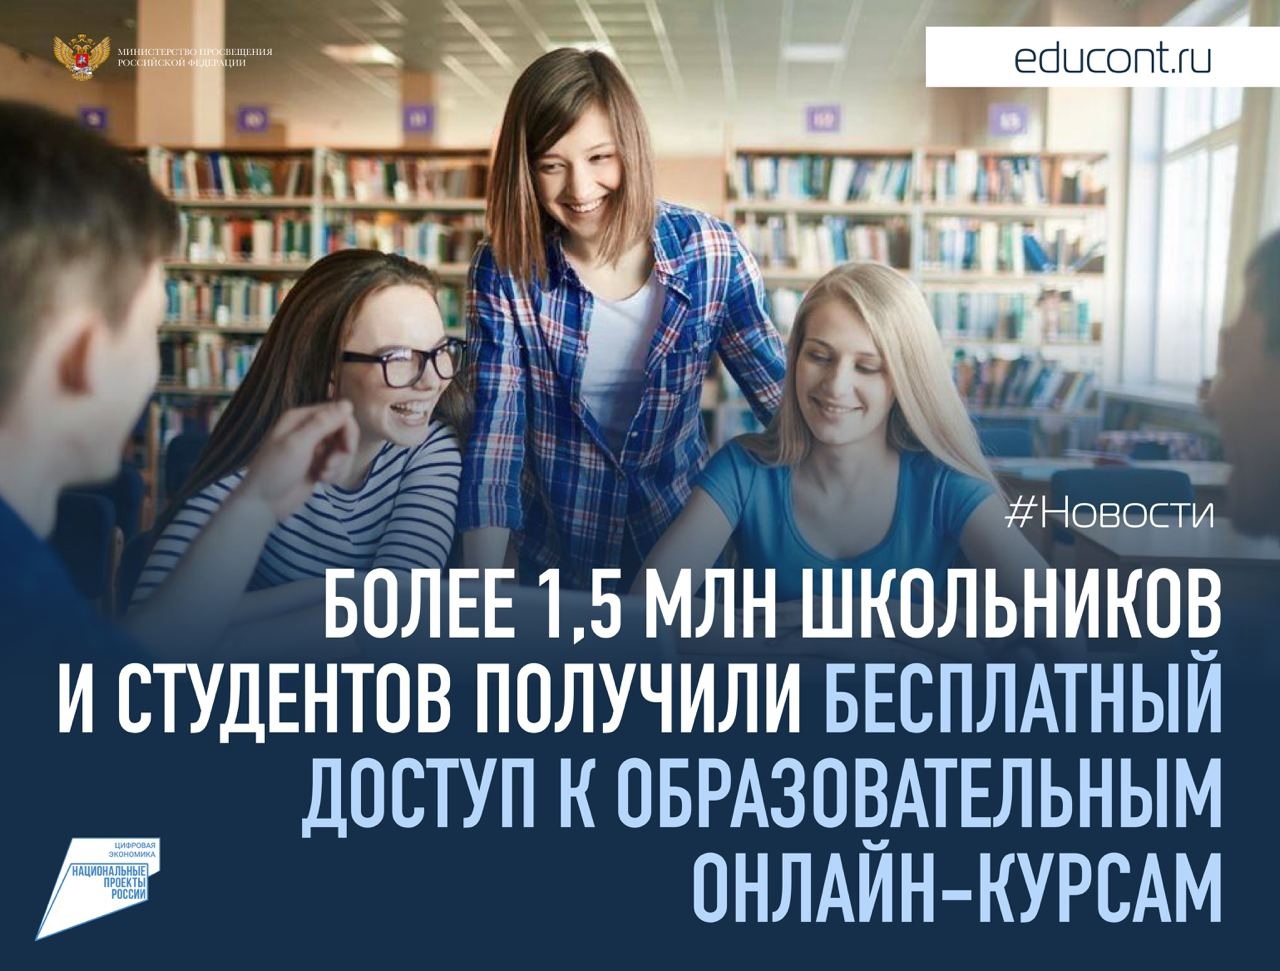 Более 1,5 млн школьников и студентов получили бесплатный доступ к образовательным онлайн-курсам